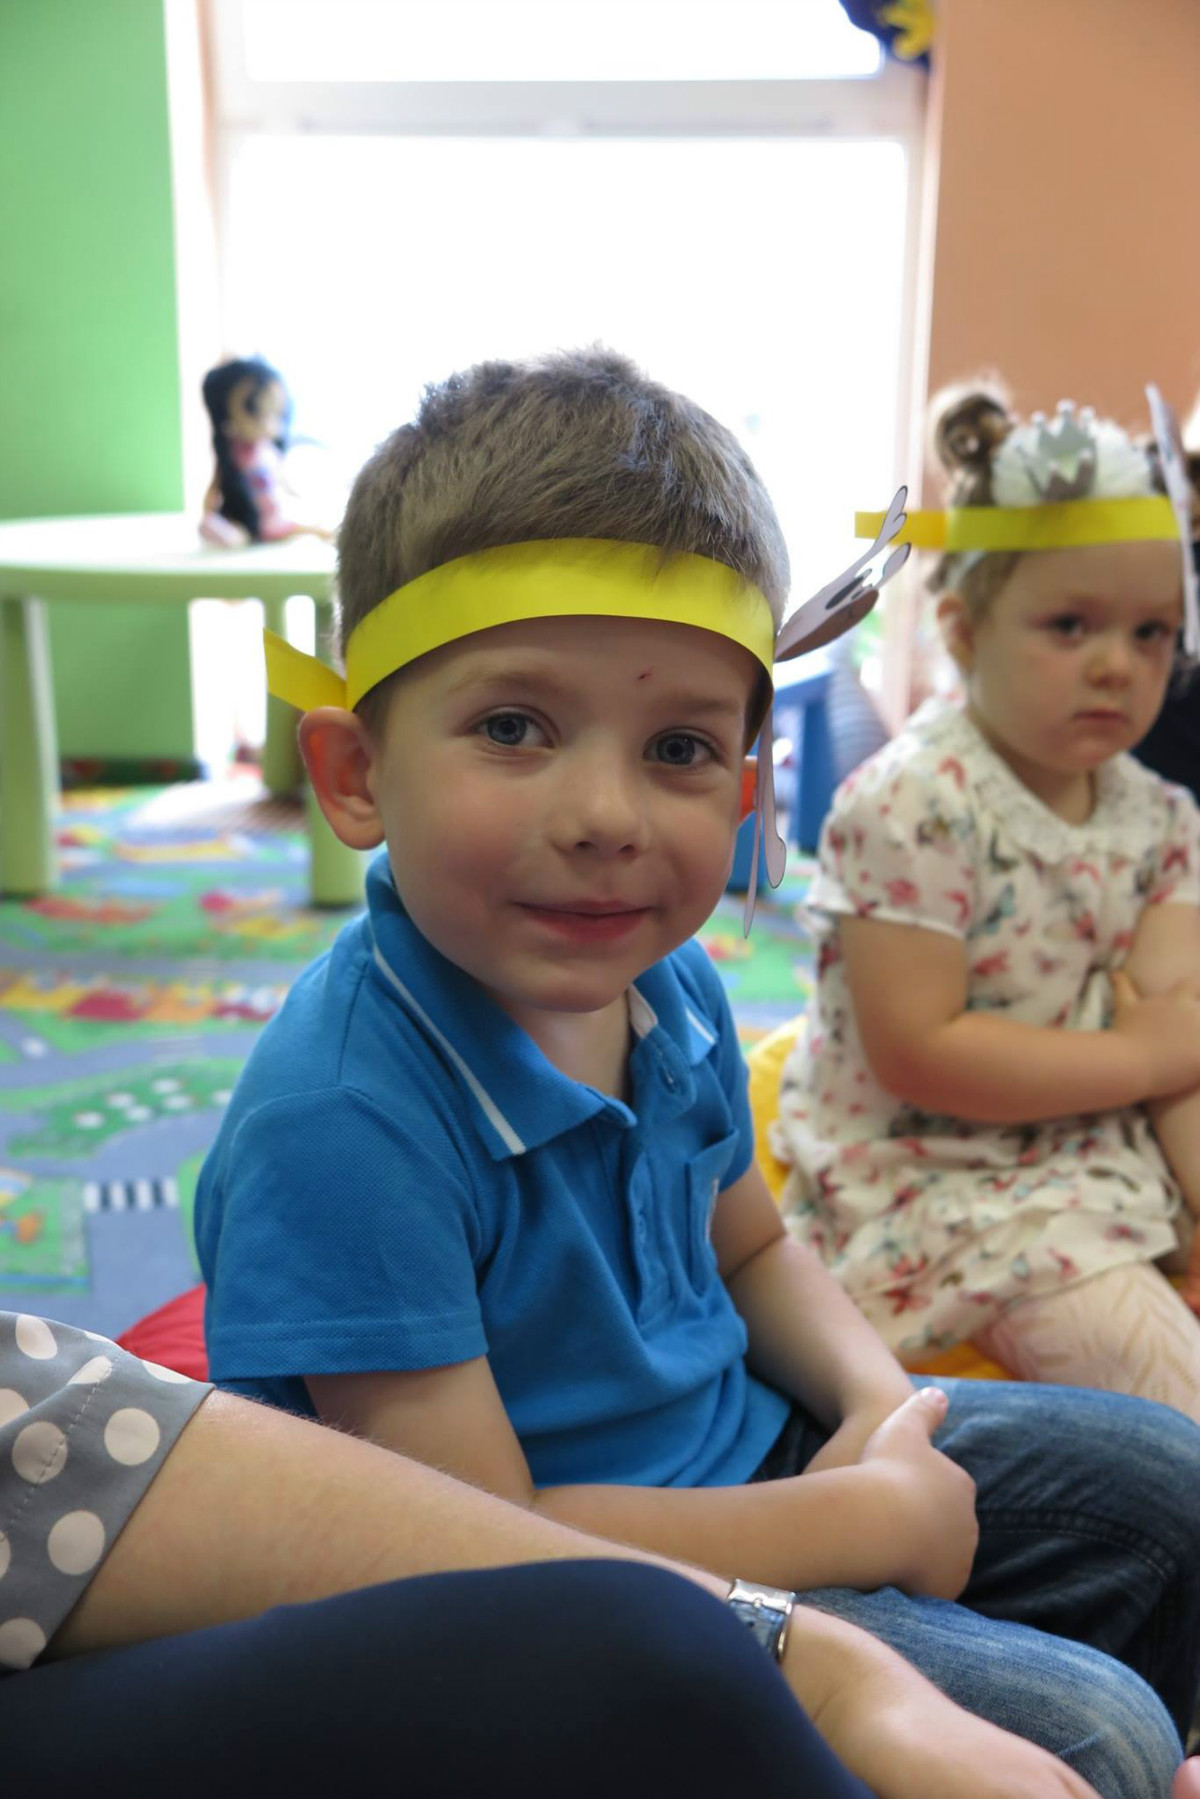 W oddziale dla dzieci na pufach siedzi chłopiec z dziewczynką w żółtych opaskach na głowie.